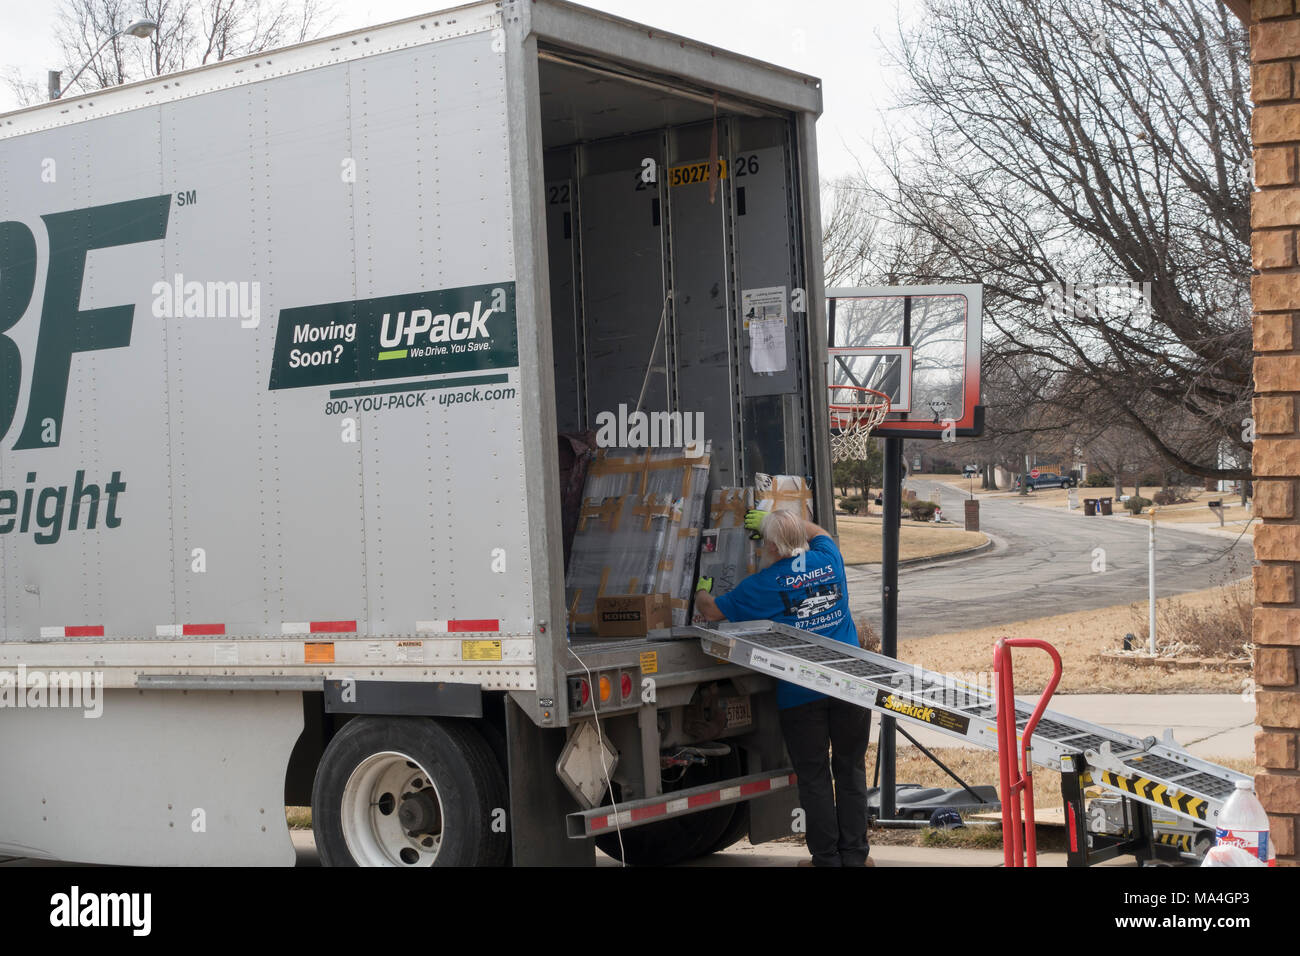 Un homme de race blanche aux cheveux blancs de déchargements des biens ménagers d'un ABF UPack ou camion de déménagement dans la région de Wichita, Kansas, États-Unis. Banque D'Images